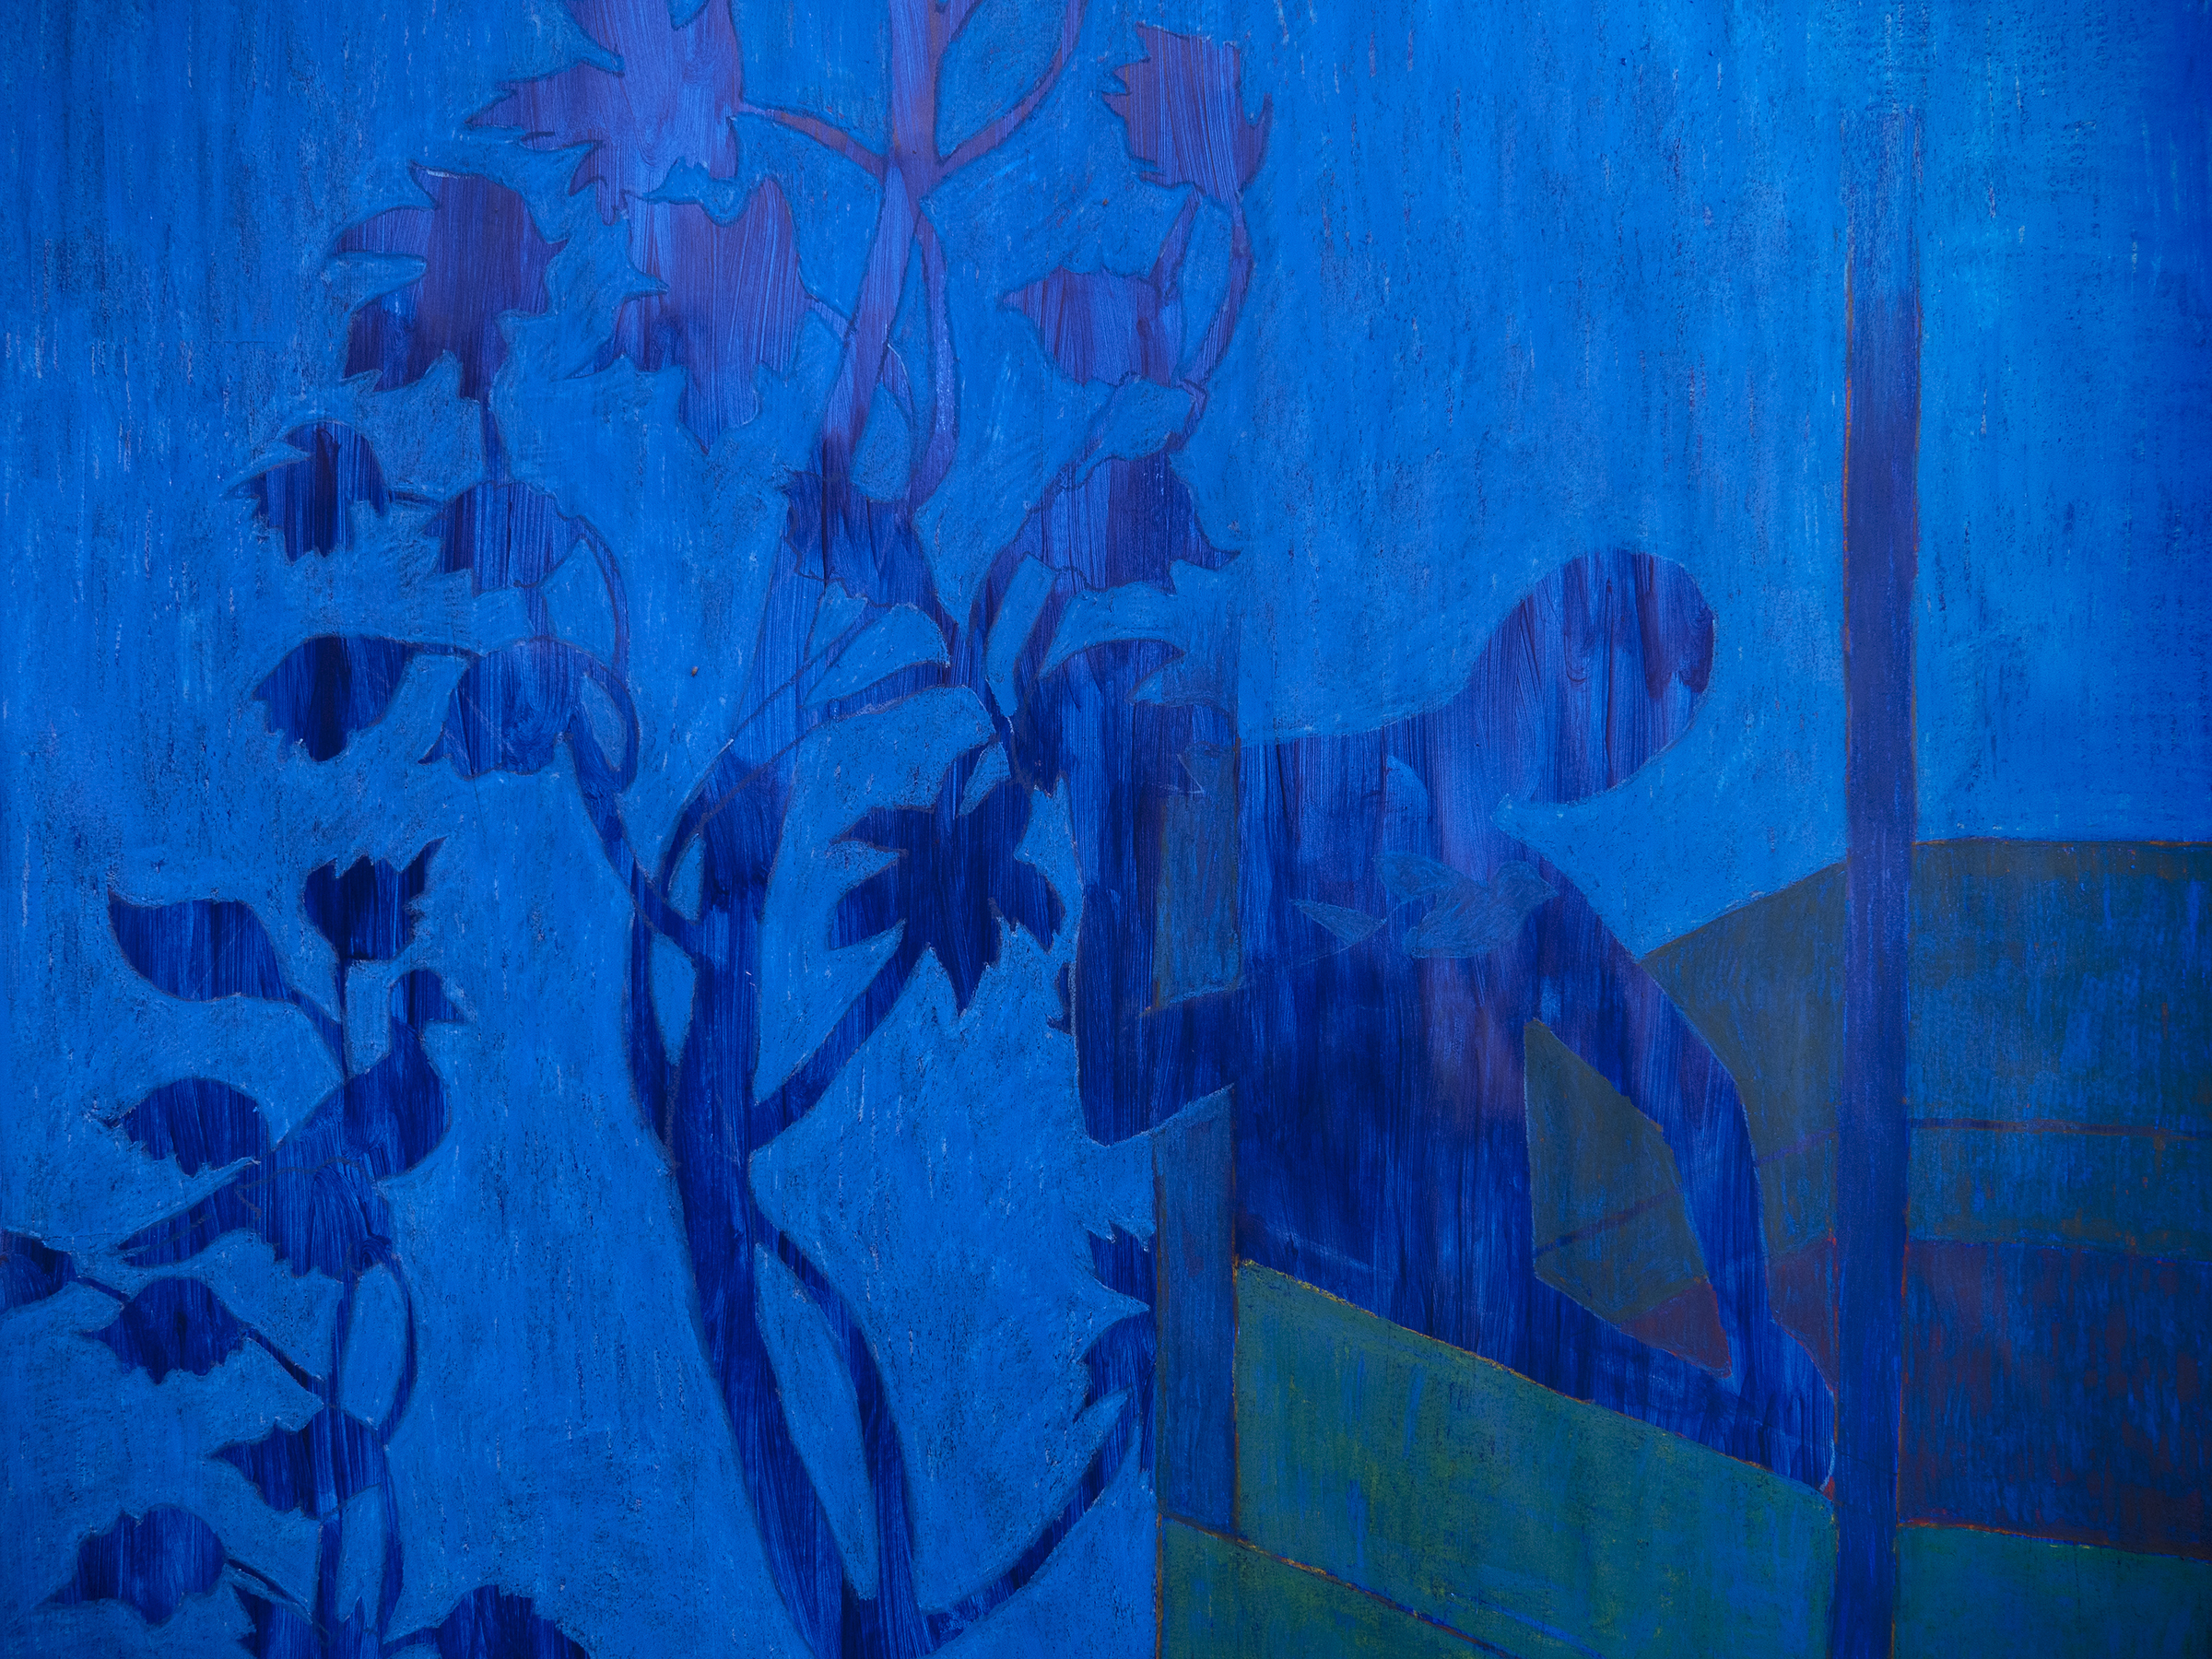 גיא לוי, ציור עם רקע כחול